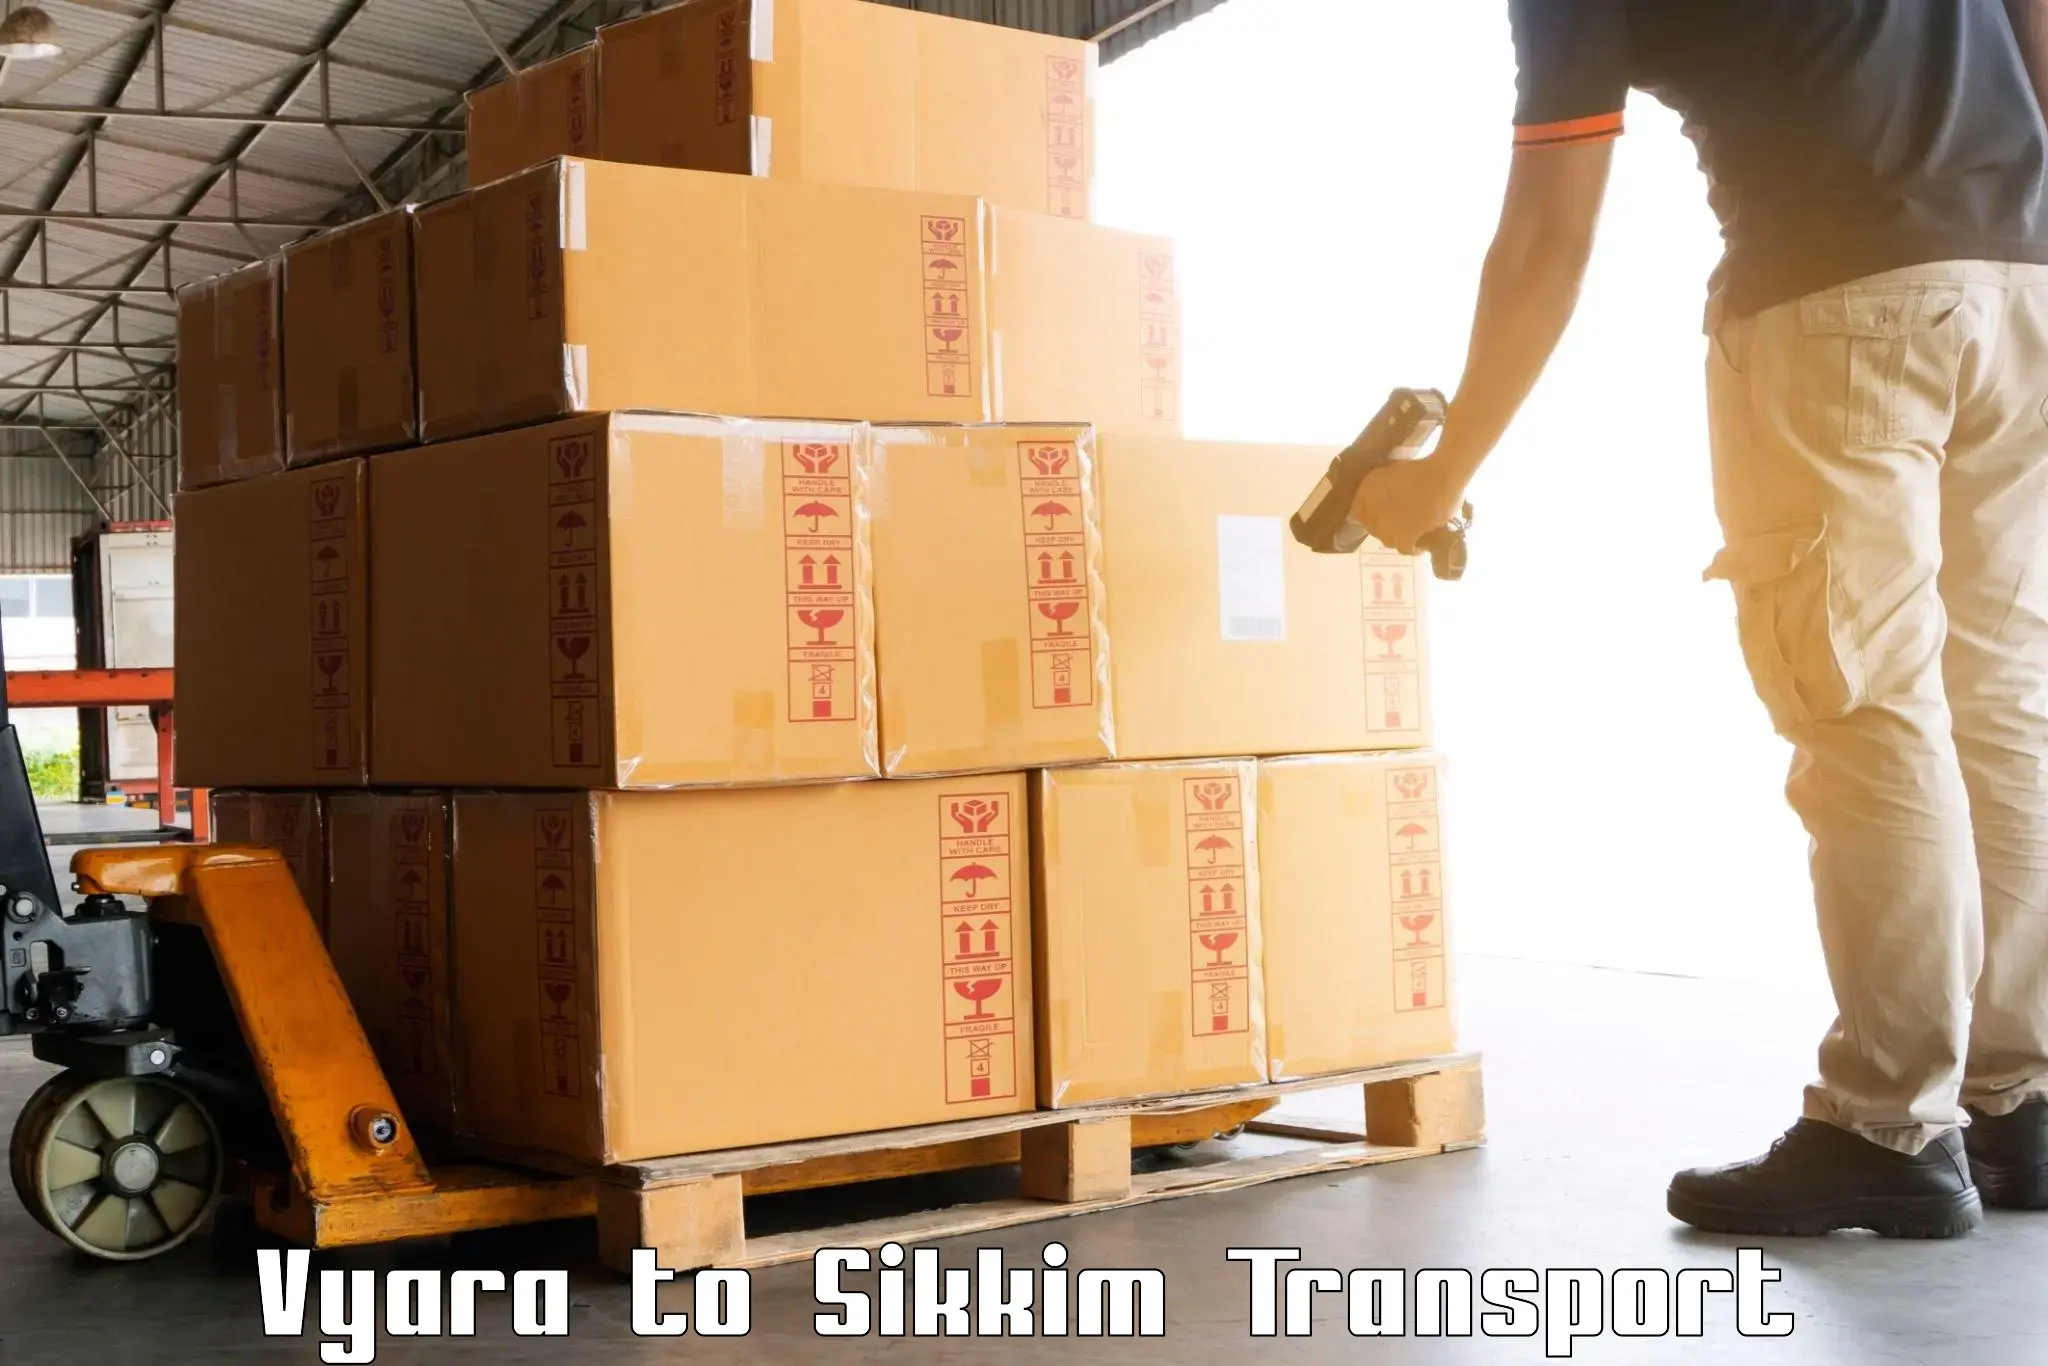 Cargo transport services Vyara to Mangan